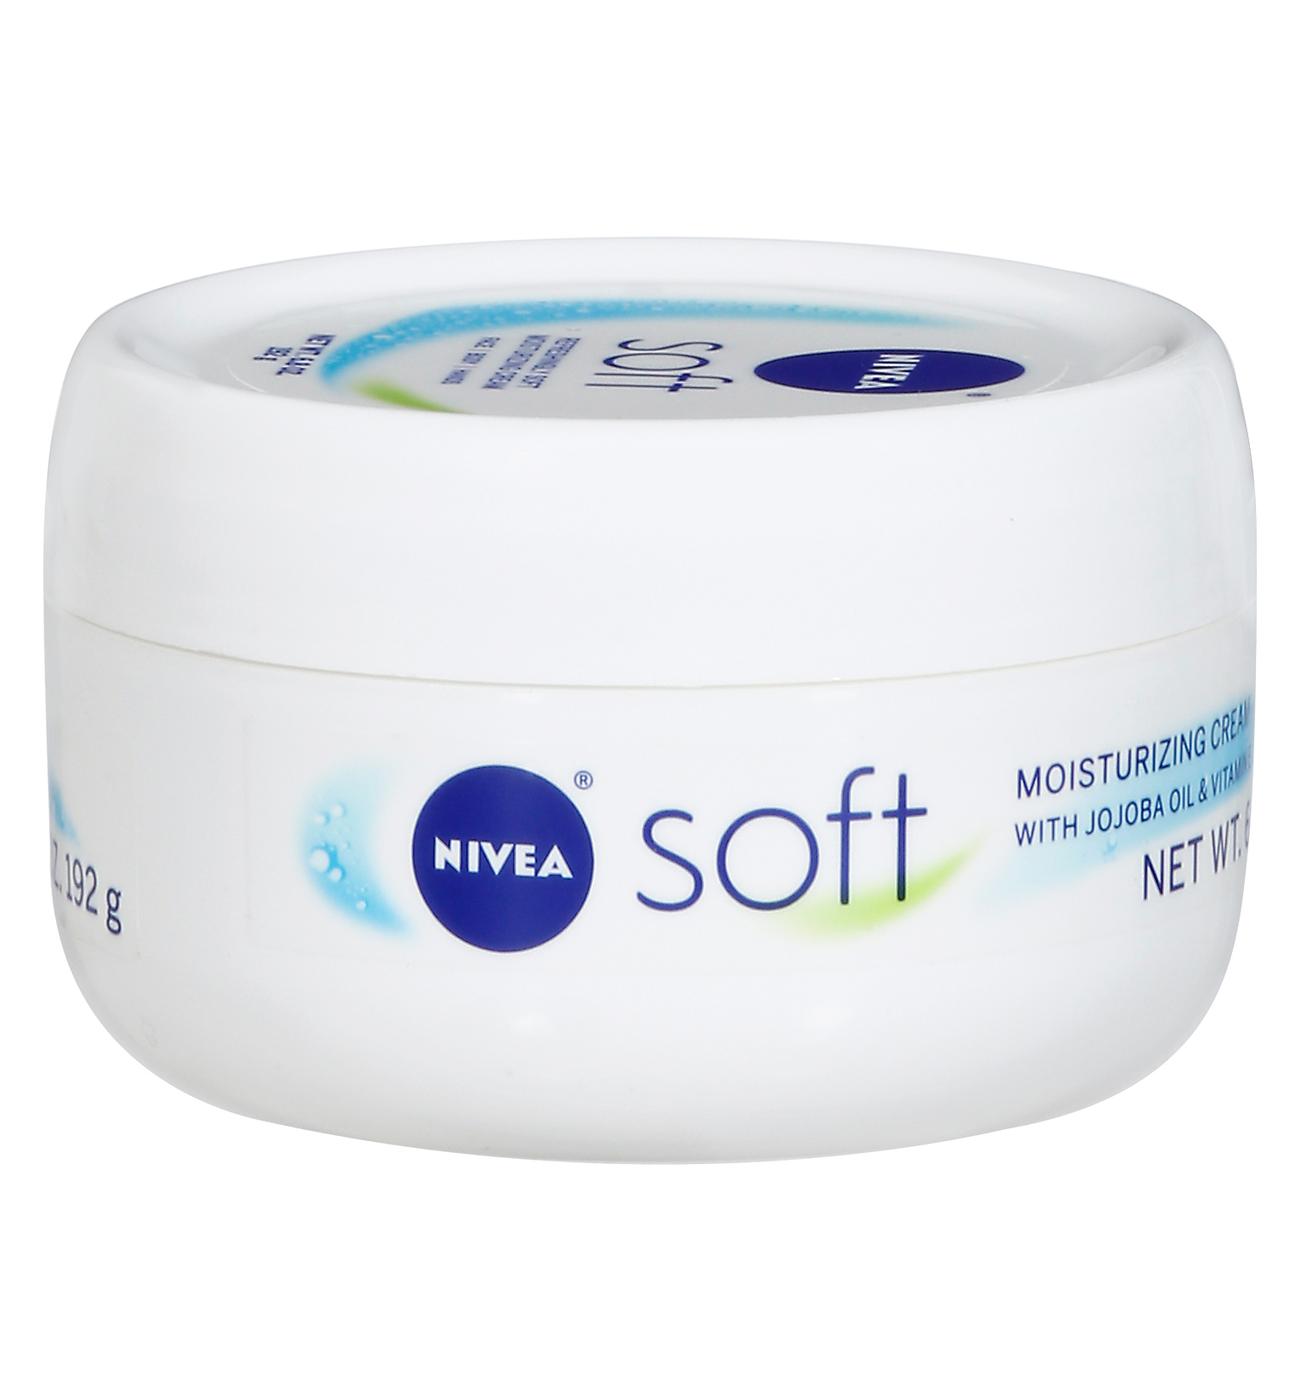 NIVEA Soft Moisturizing Creme Body; image 1 of 3